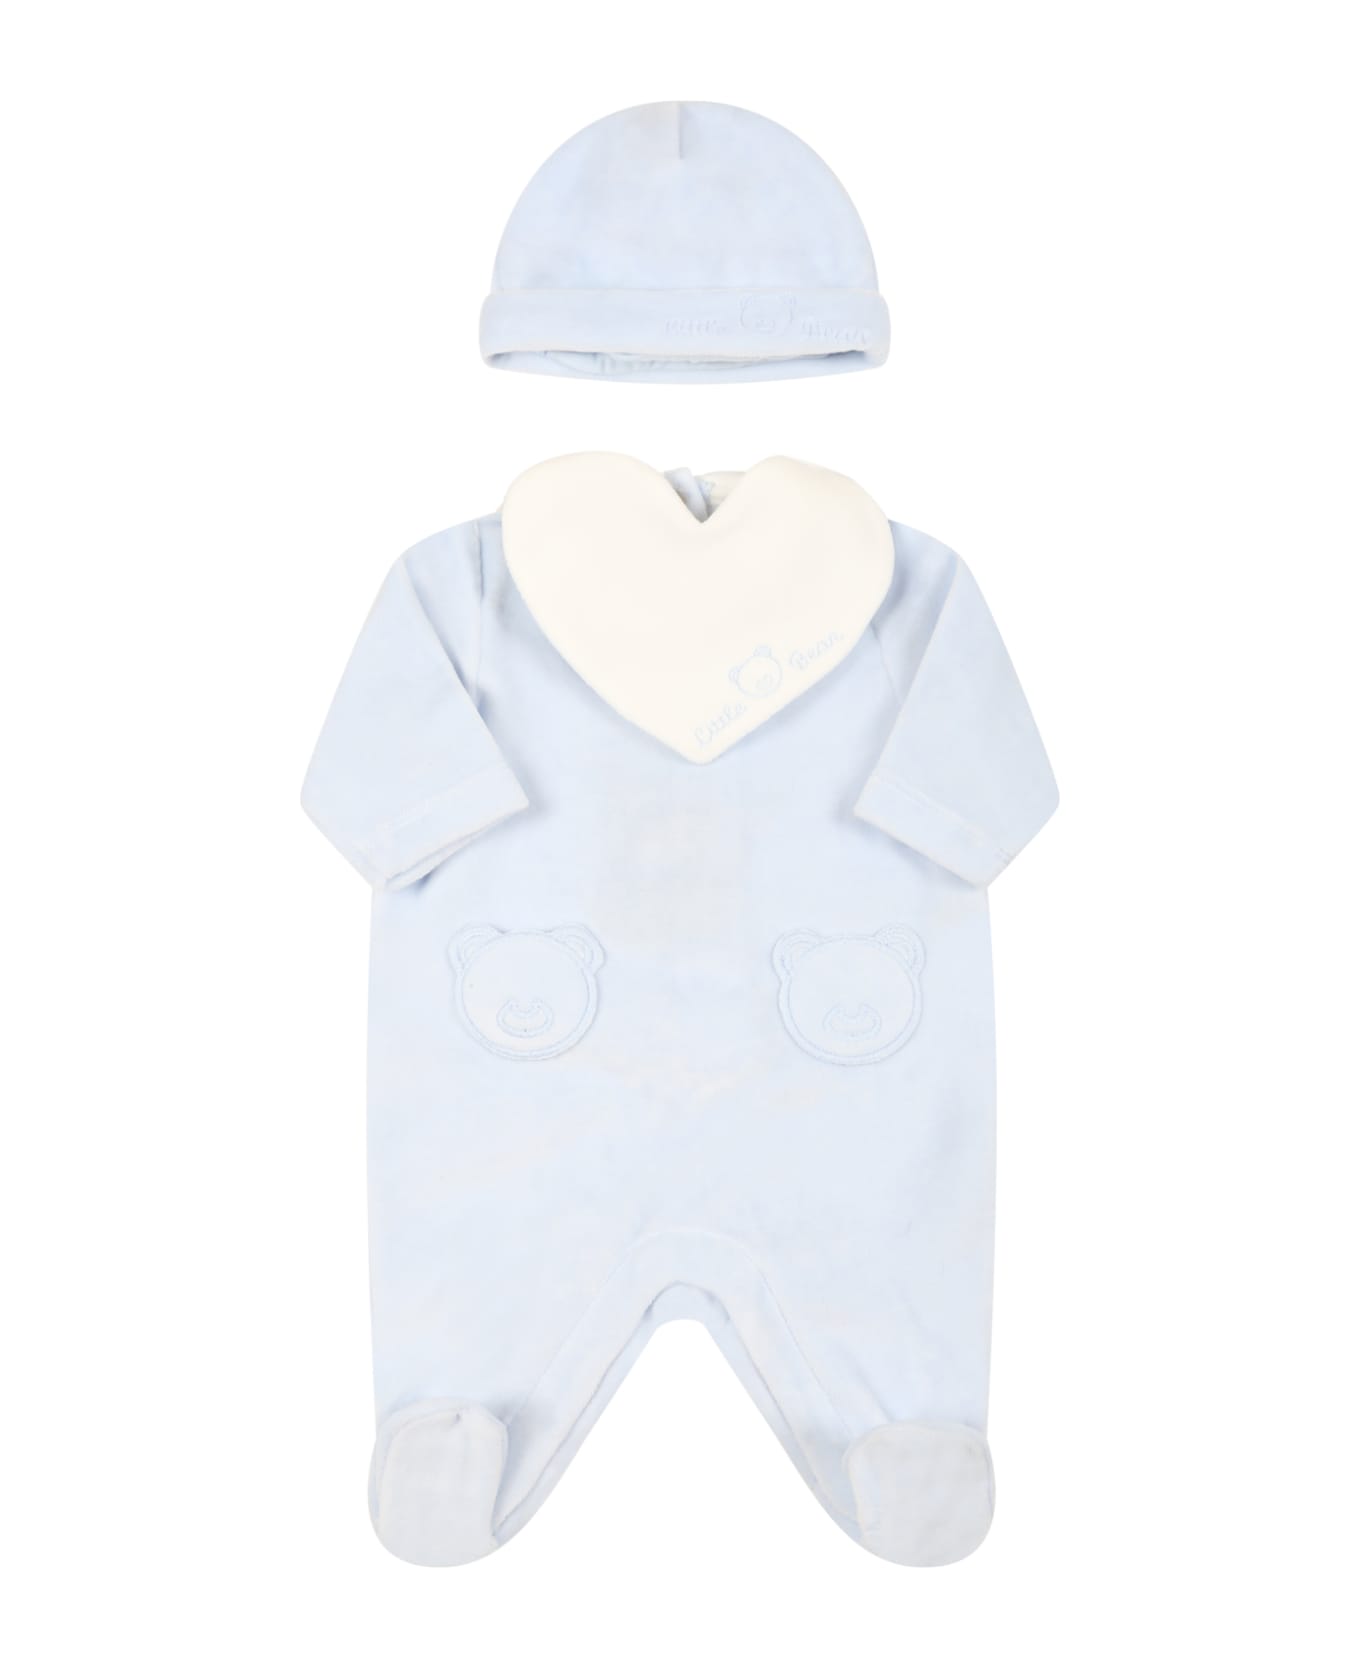 Little Bear Multicolor Set For Baby Boy - Light Blue